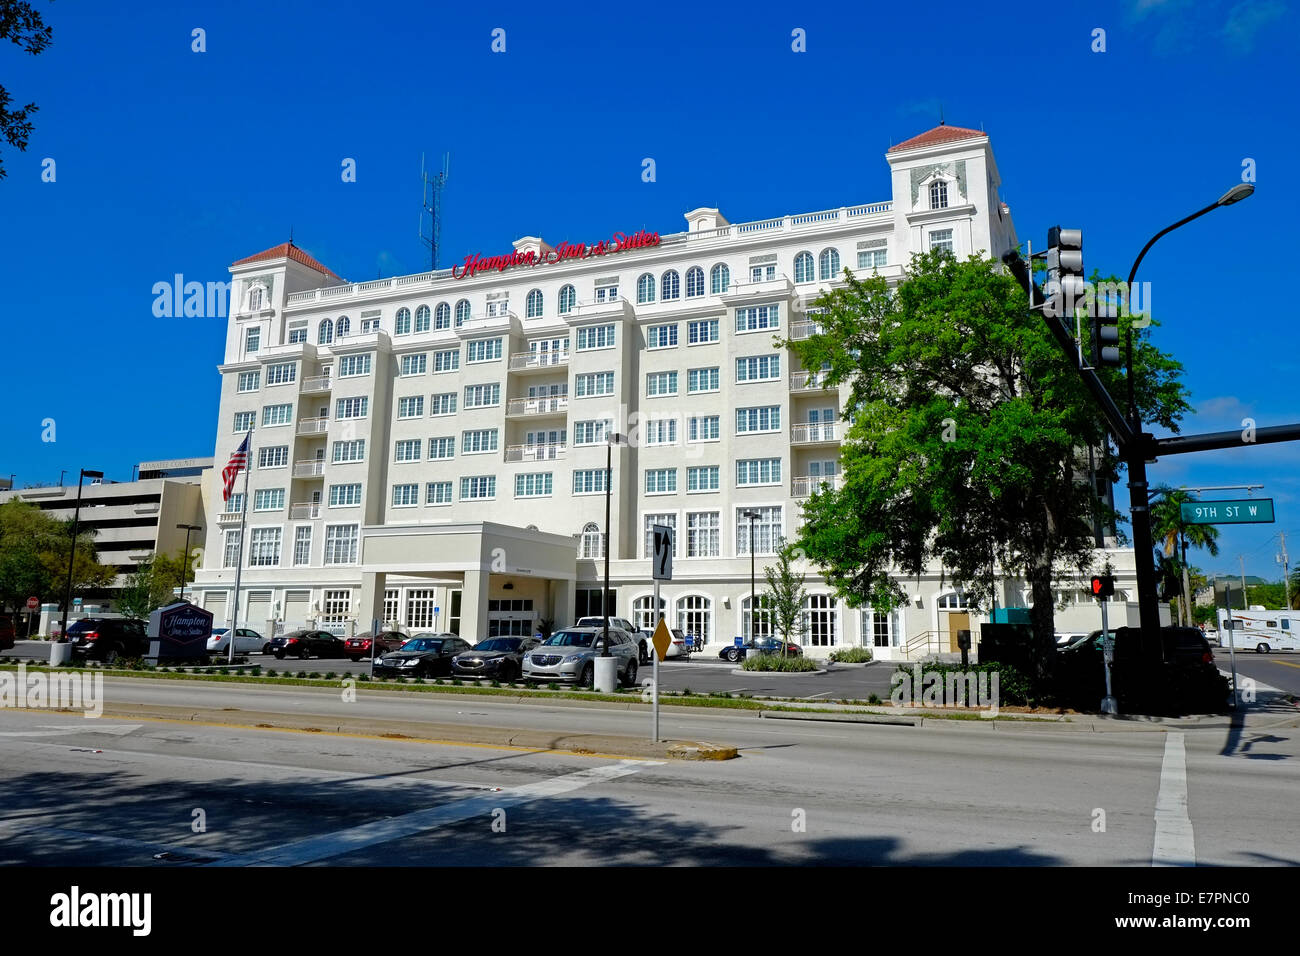 Hôtel historique restauré Bradenton FL Floride Banque D'Images